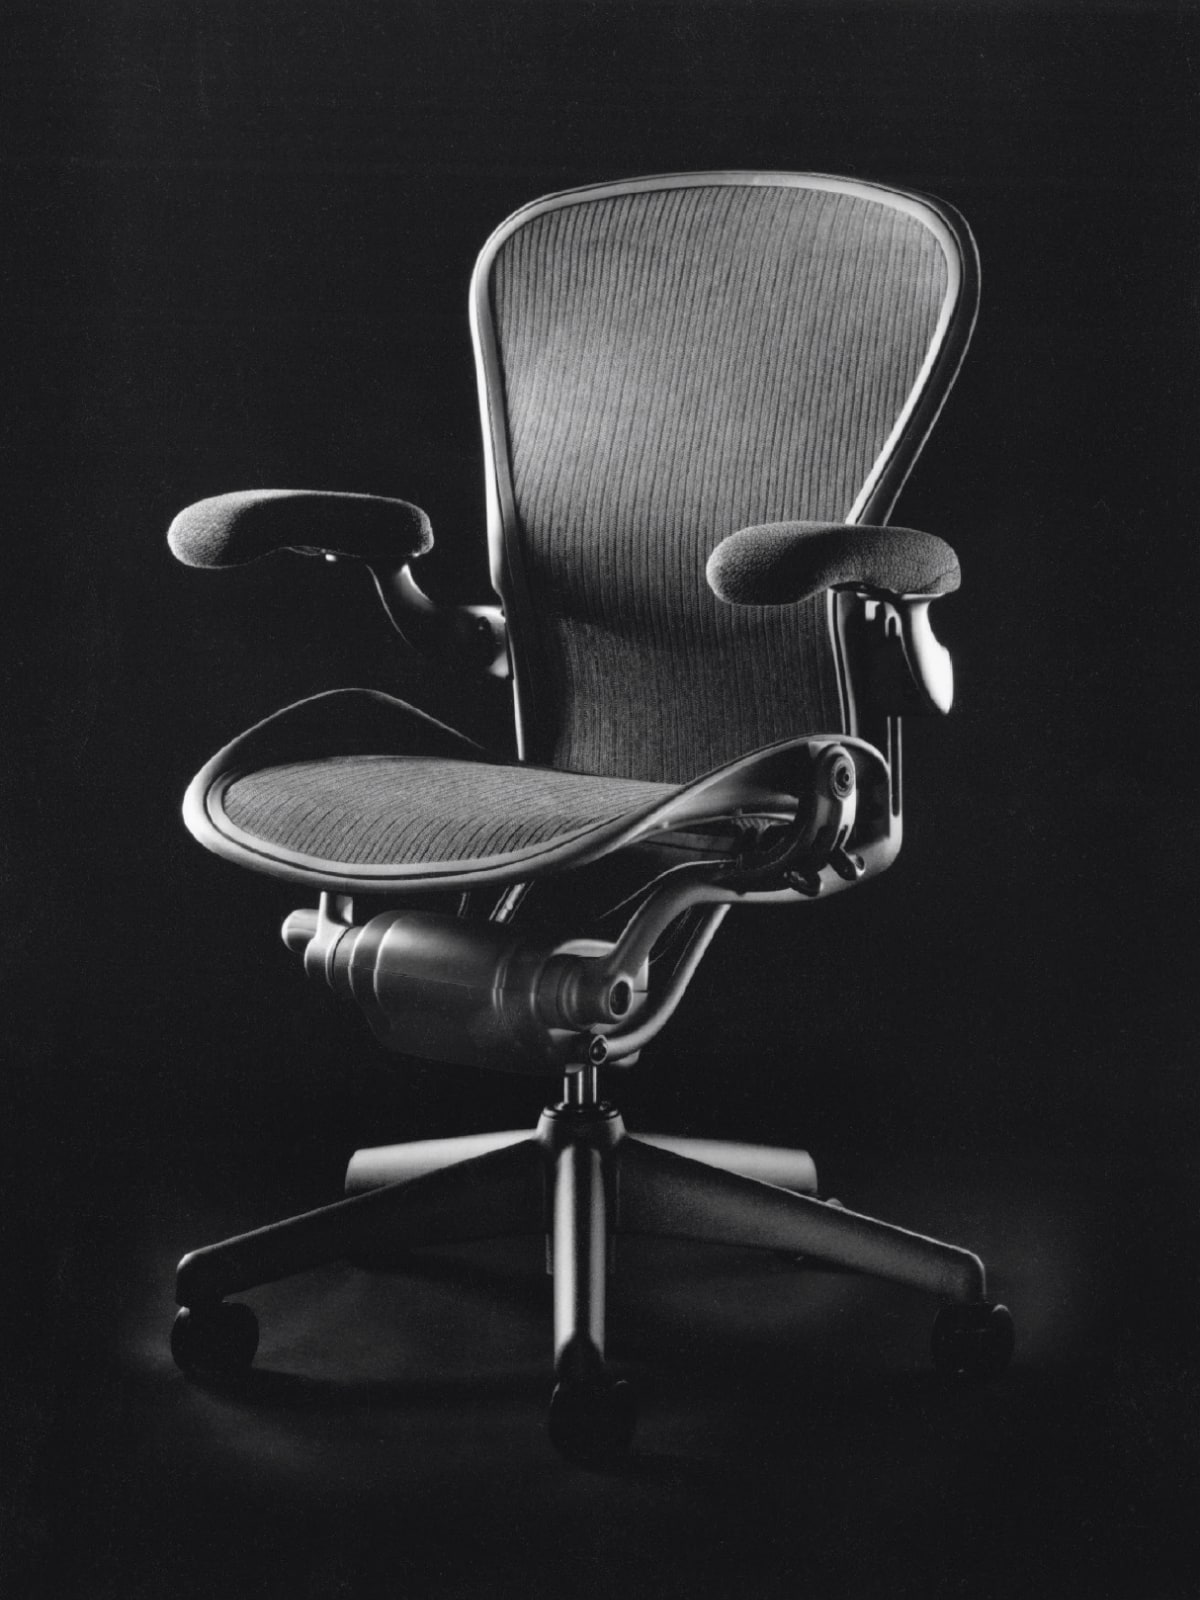 Una silla Aeron en negro con base de estrella de 5 puntas.